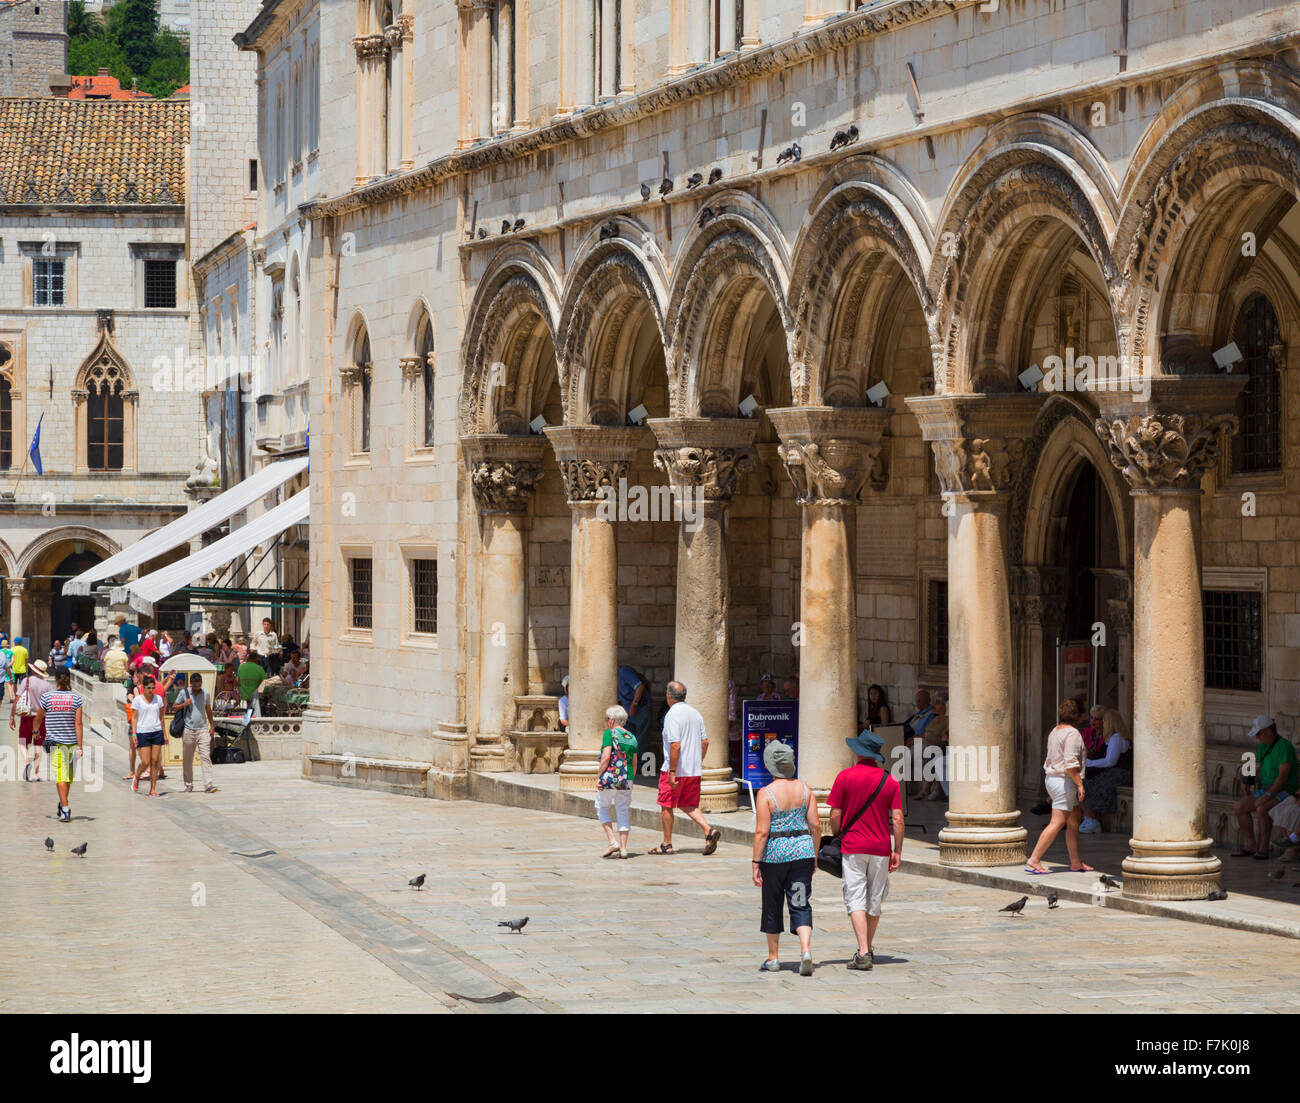 Dubrovnik, del condado de Dubrovnik-Neretva, en Croacia. Pred Dvorom street en la ciudad vieja. A la derecha, arcos del Rector's Palace. Foto de stock